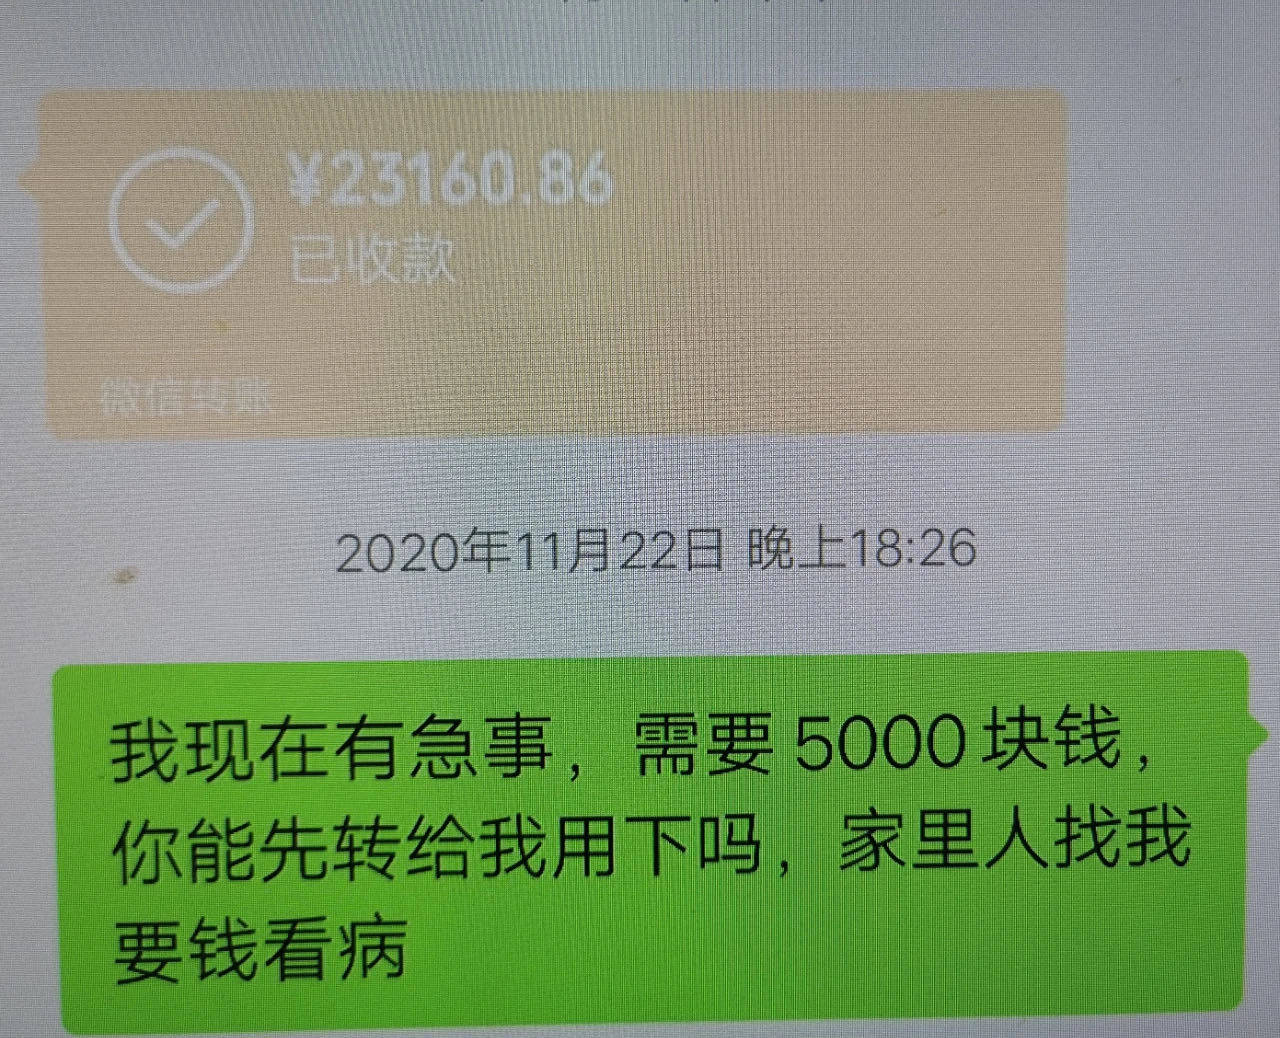 微信转账聊天截图今年1月,因张丽不断要钱,马先生开始向朋友借钱